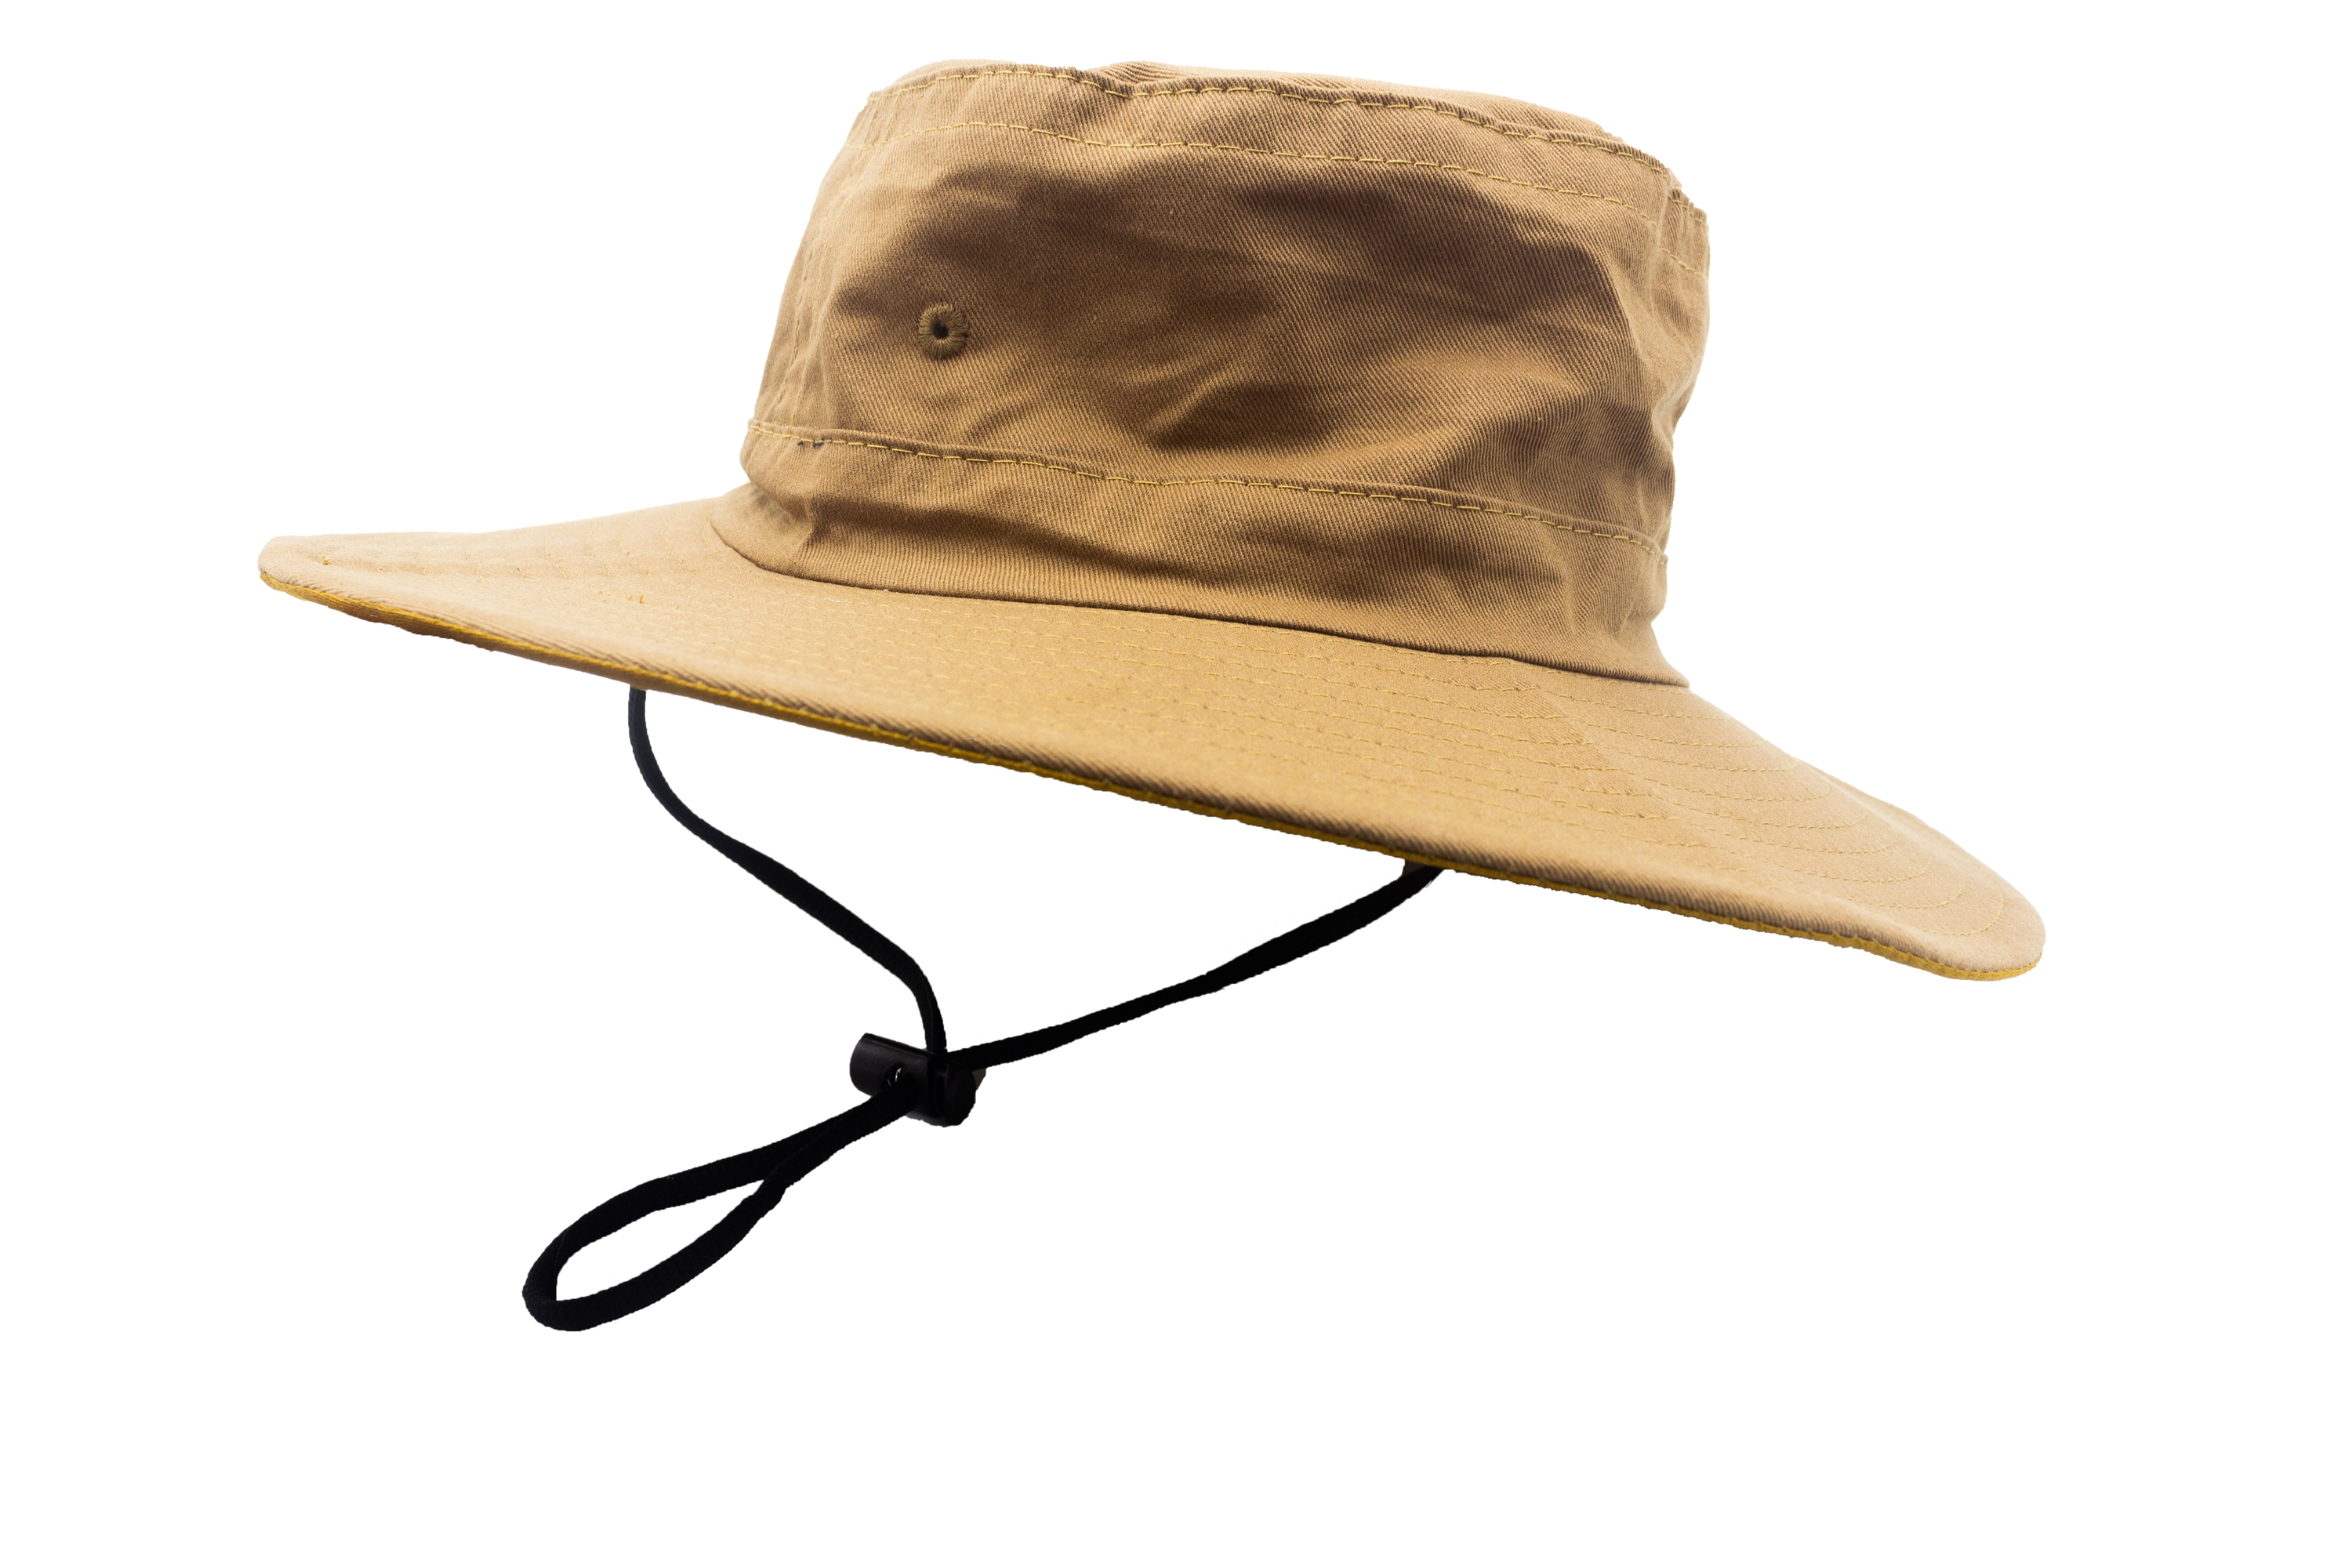 หมวกราคาถูก มีสายรัดคาง หมวกเดินป่า หมวกปีกทหาร หมวกปีก หมวกบักเก็ต หมวกกันแดดส่งฟรี (ซื้อครบ99บาท)